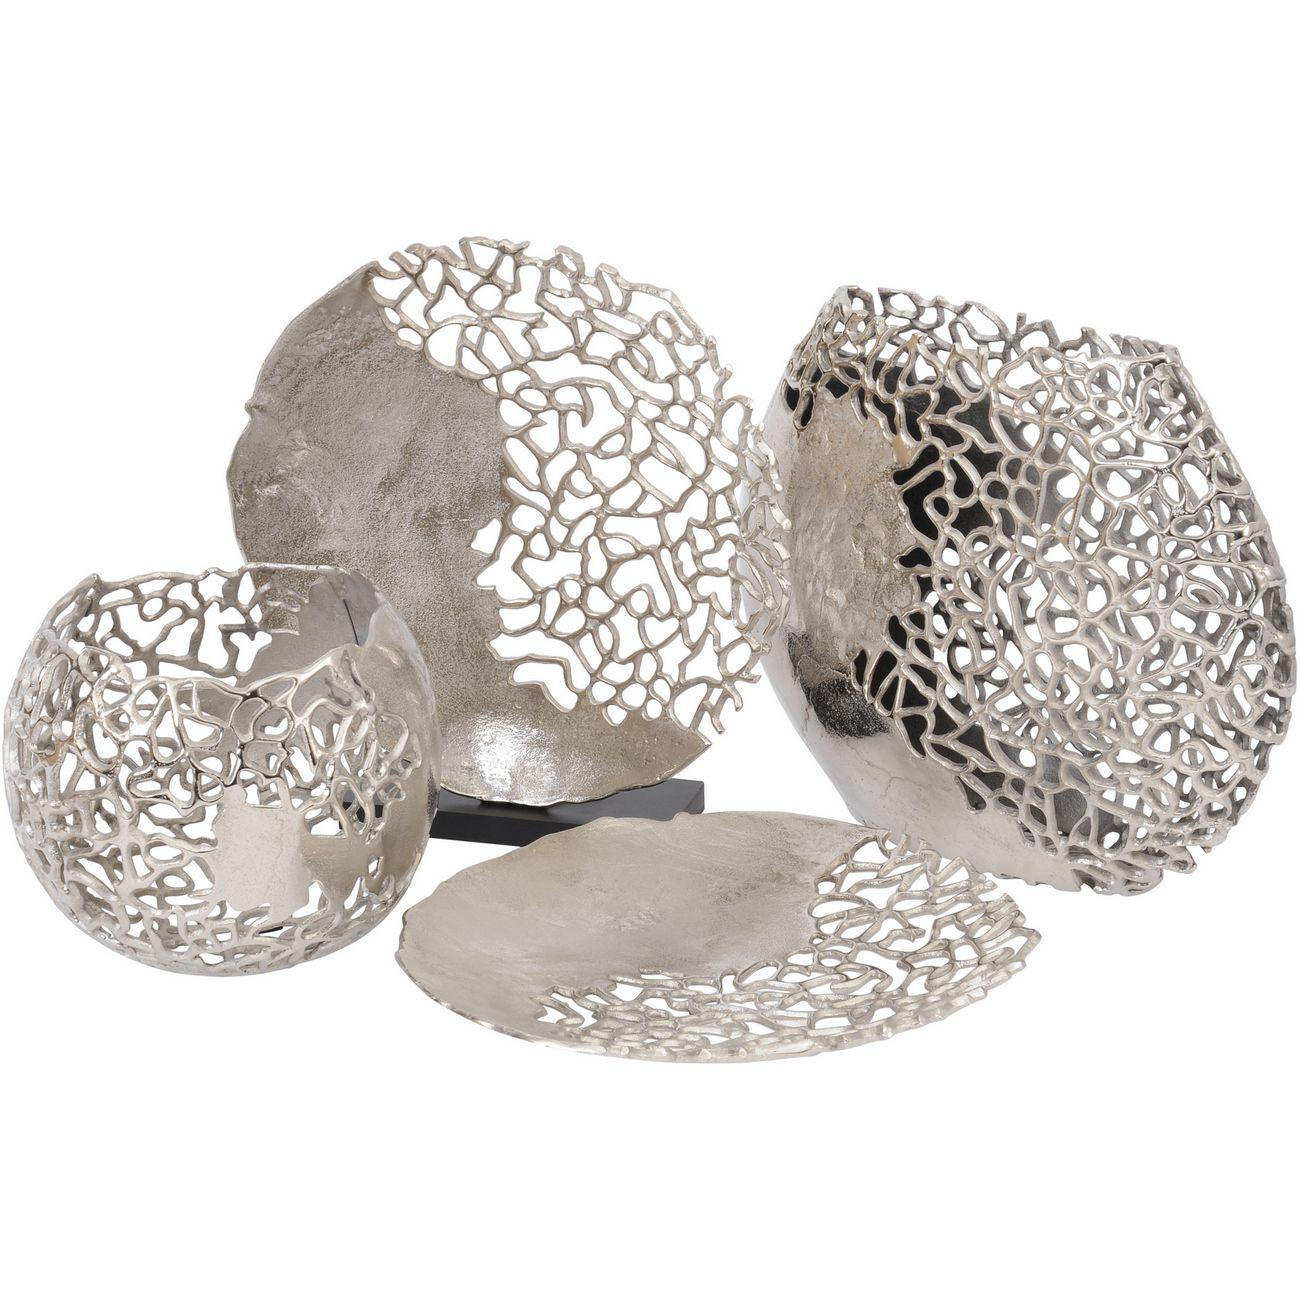 Blakemore Decorative Aluminium Silver Round Vase with Nautical Coral Design detail 26Hx28cm diameter-26Hx28cm Diameter-Distinct Designs (London) Ltd